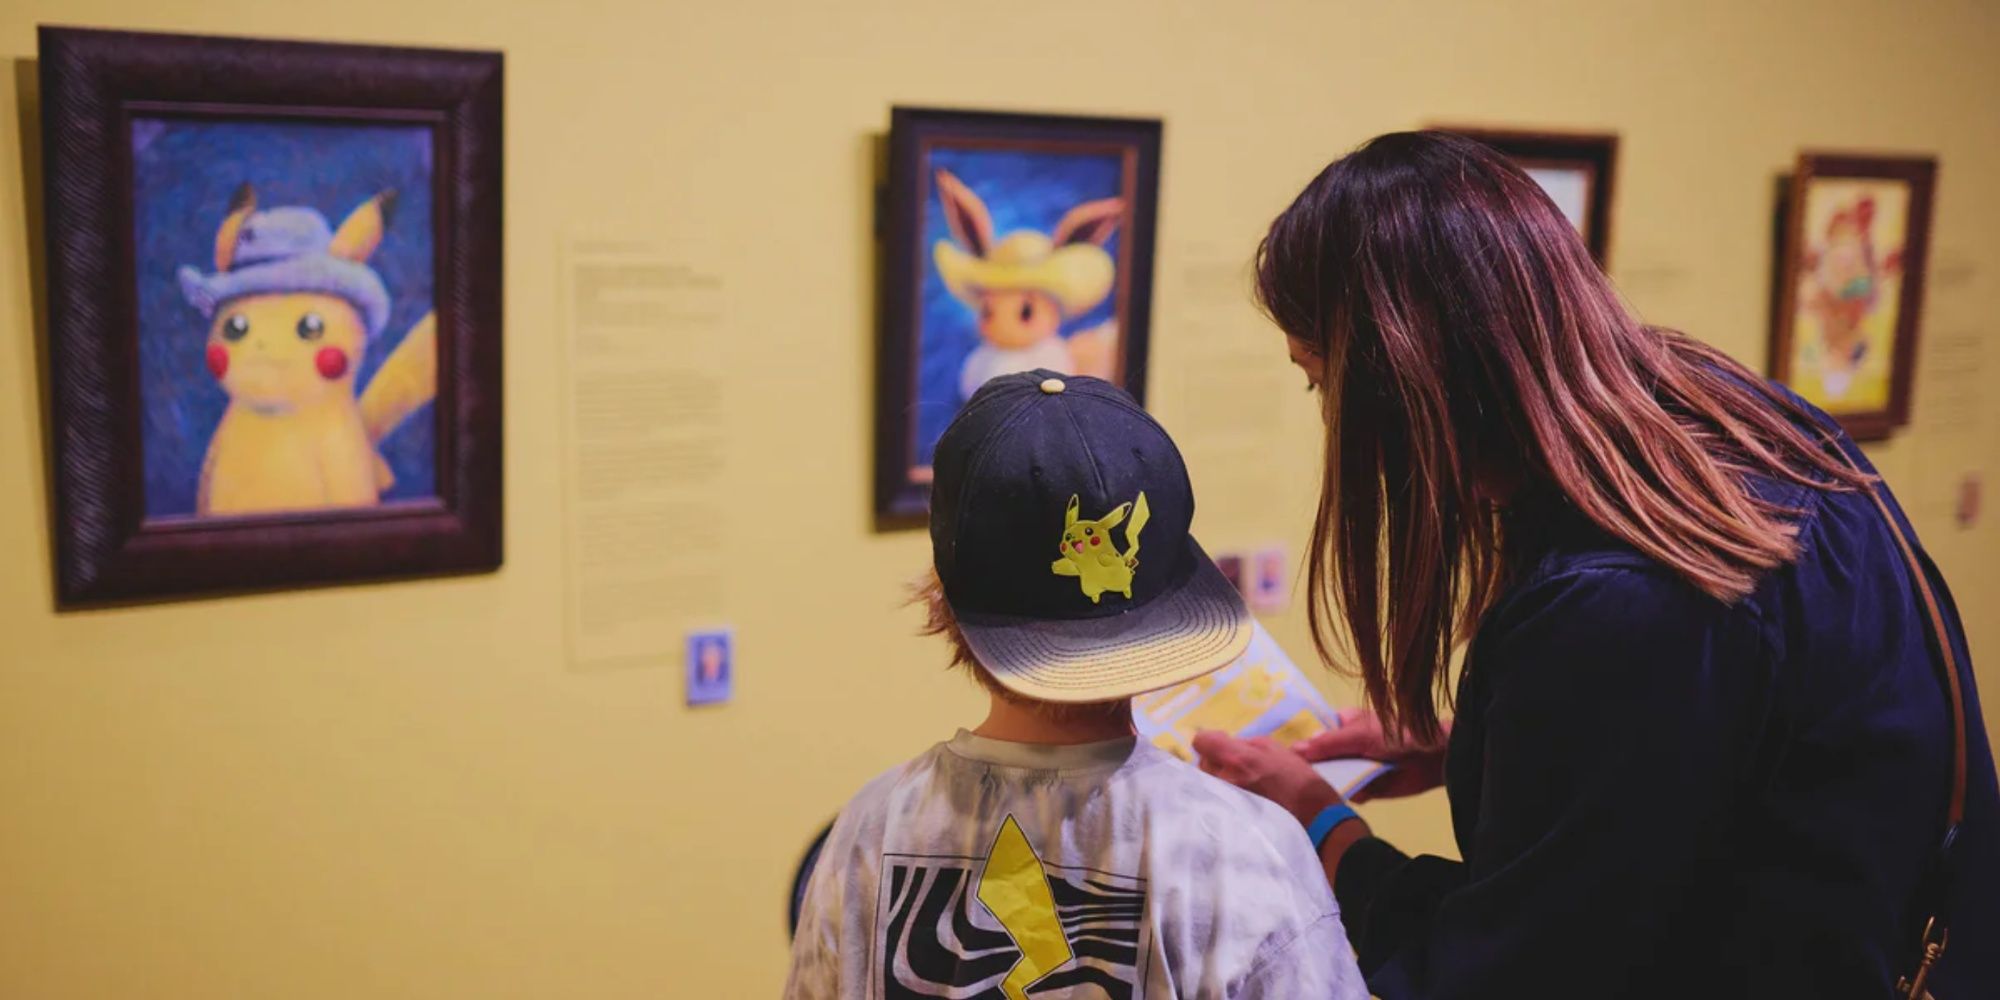 Eltern und Kind schauen sich das Kunstwerk von Pokemon van Gogh an